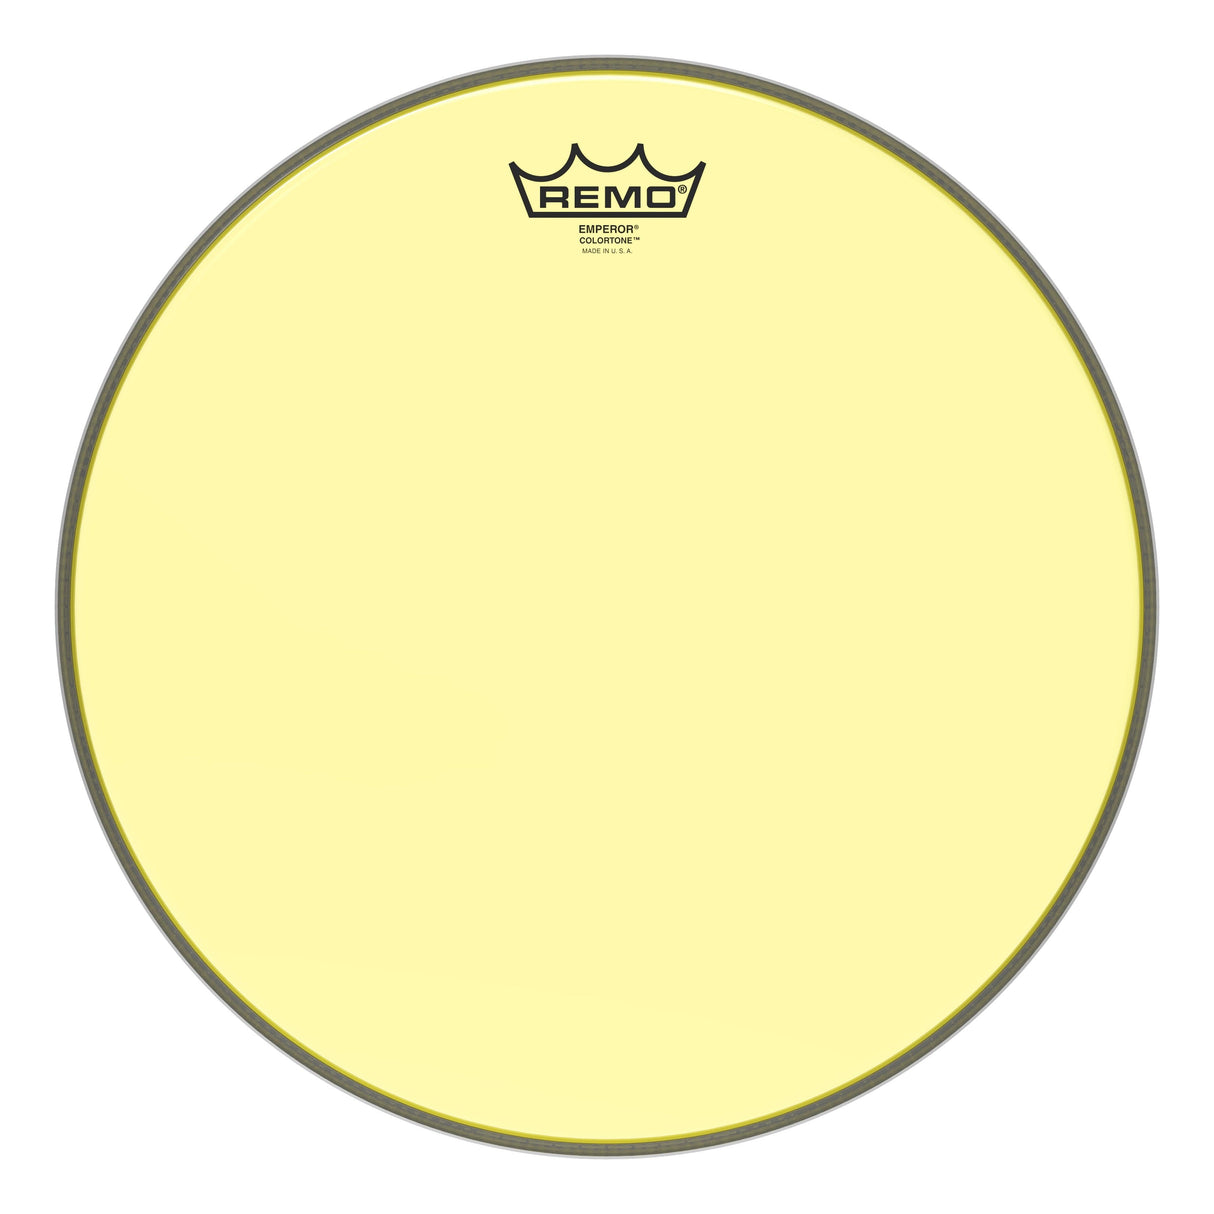 Remo Emperor Colortone Yellow 14 Inch Drum Head